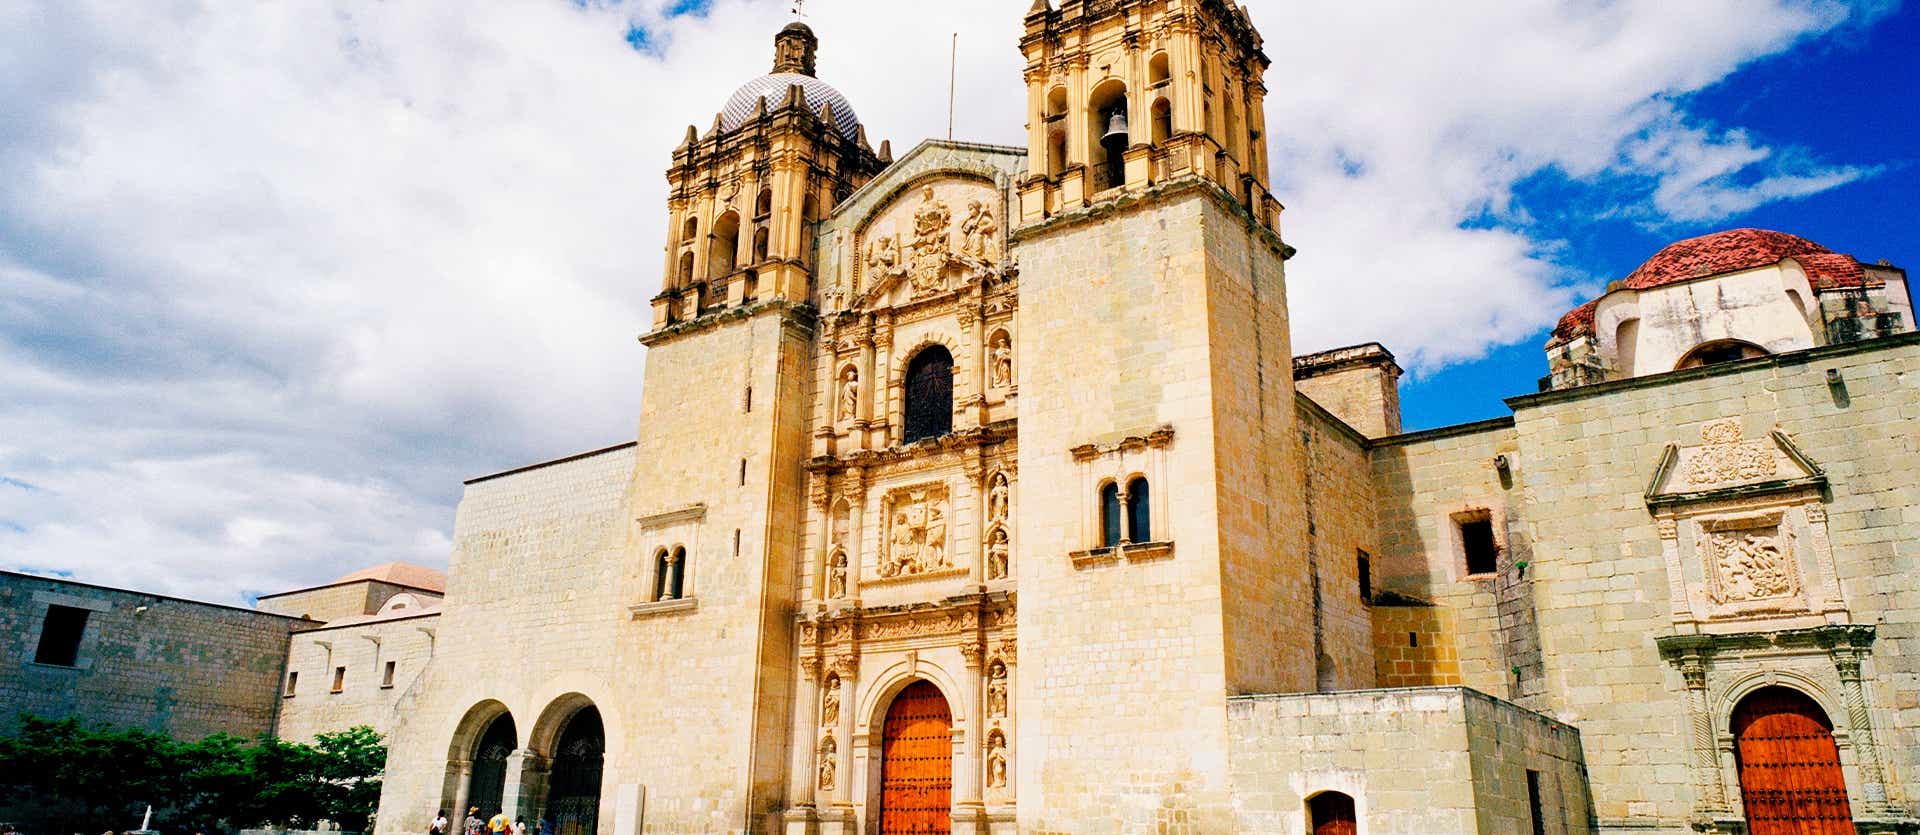 Santo Domingo de Guzman Church <span class="iconos separador"></span> Oaxaca